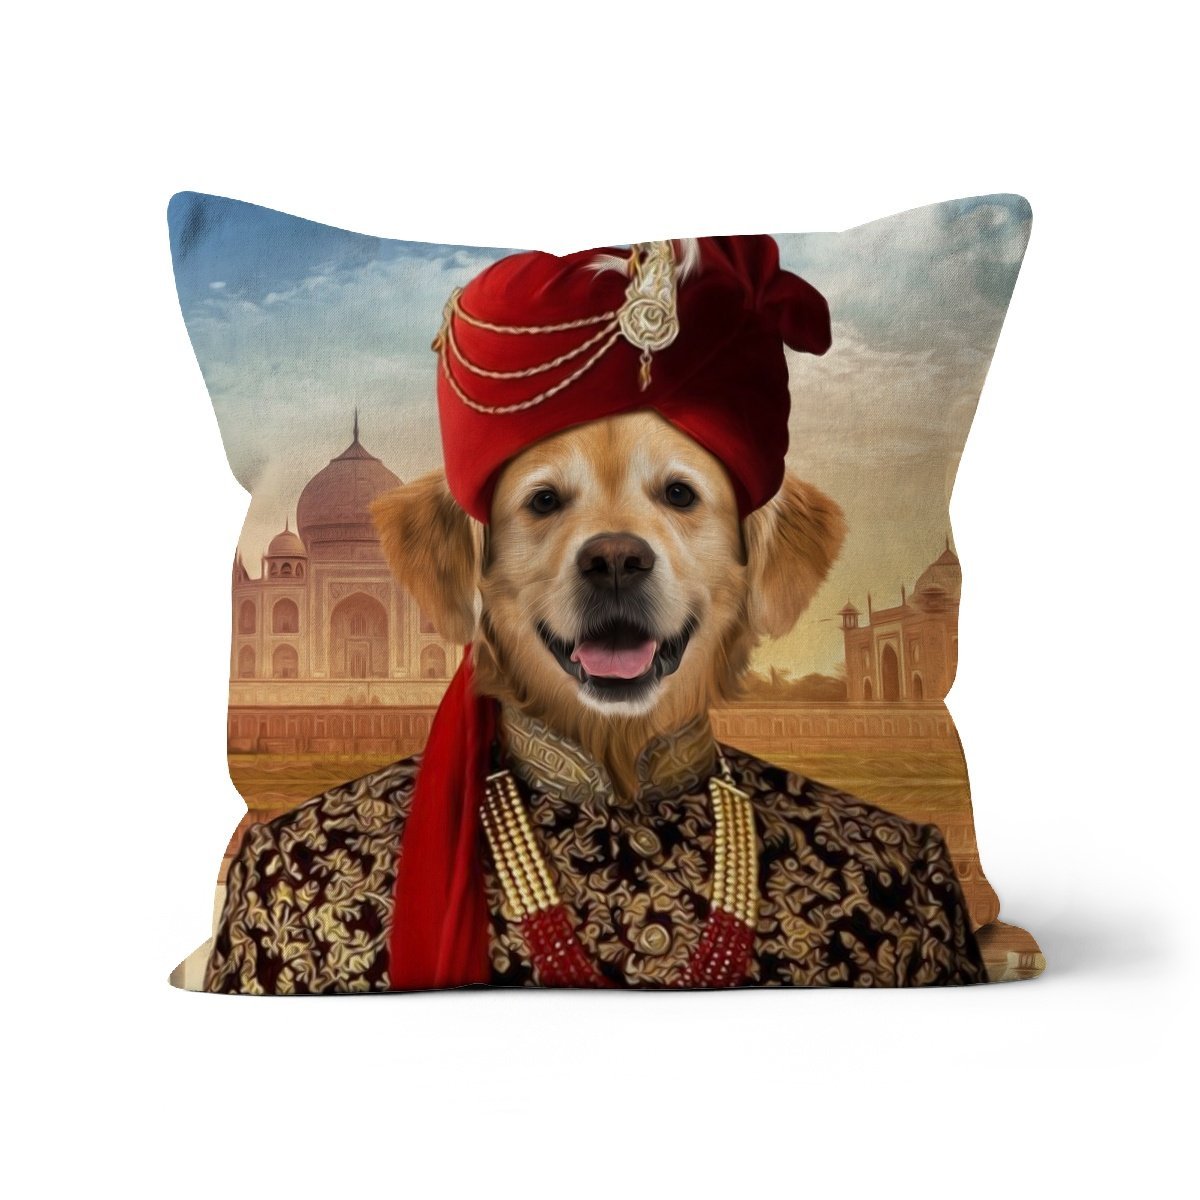 The Indian Raja: Custom Pet Cushion - Paw & Glory - #pet portraits# - #dog portraits# - #pet portraits uk#paw and glory, custom pet portrait cushion,pillow personalized, pet face pillows, dog photo on pillow, pet custom pillow, pillows with dogs picture